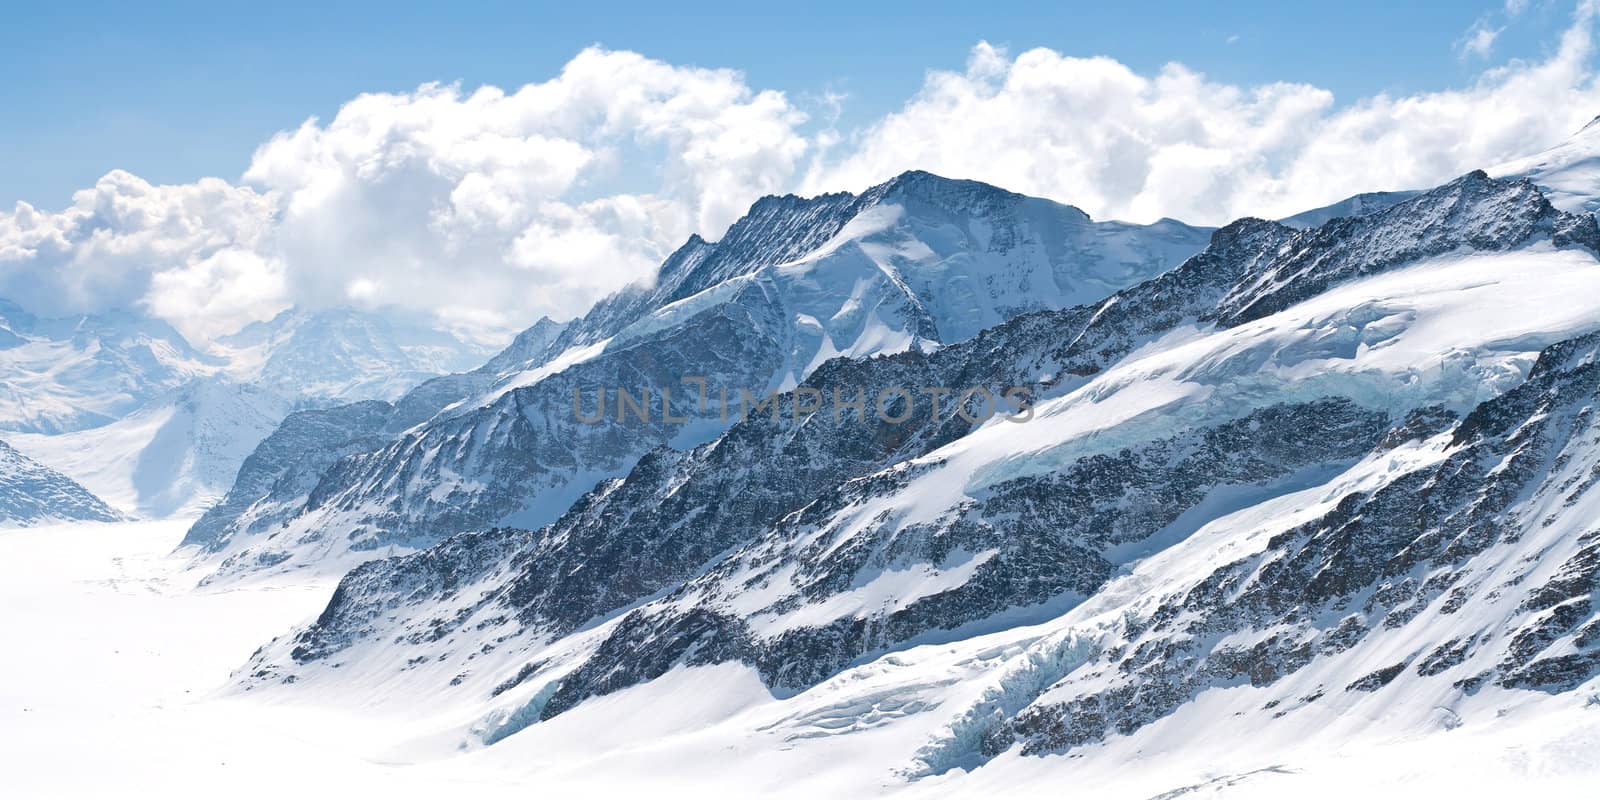 Great Aletsch Glacier Jungfrau Switzerland by vichie81